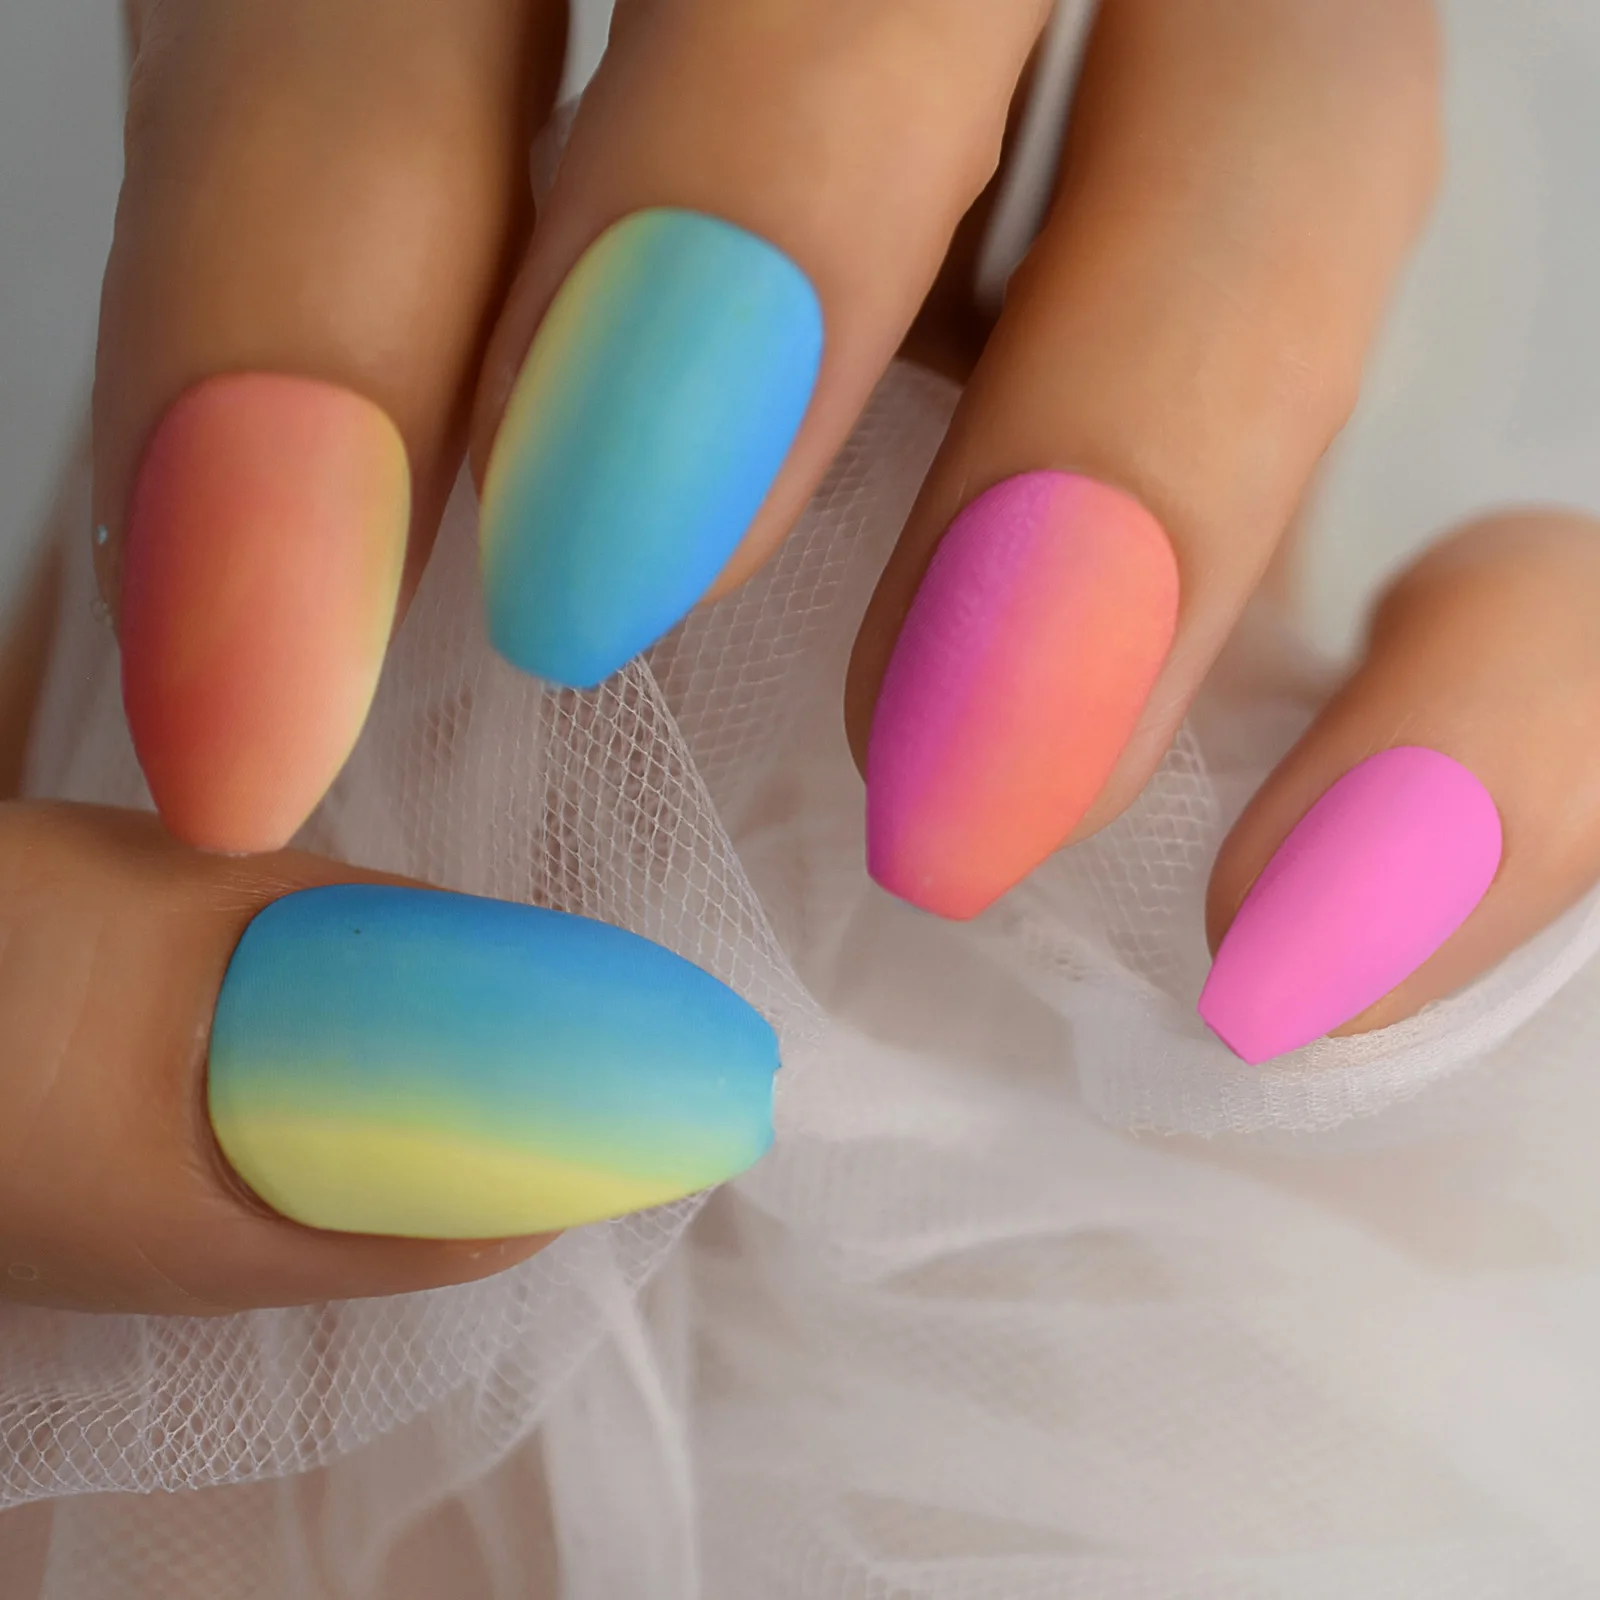 Manicure tay với màu pastel đã trở thành trào lưu hot tại Việt Nam vào năm